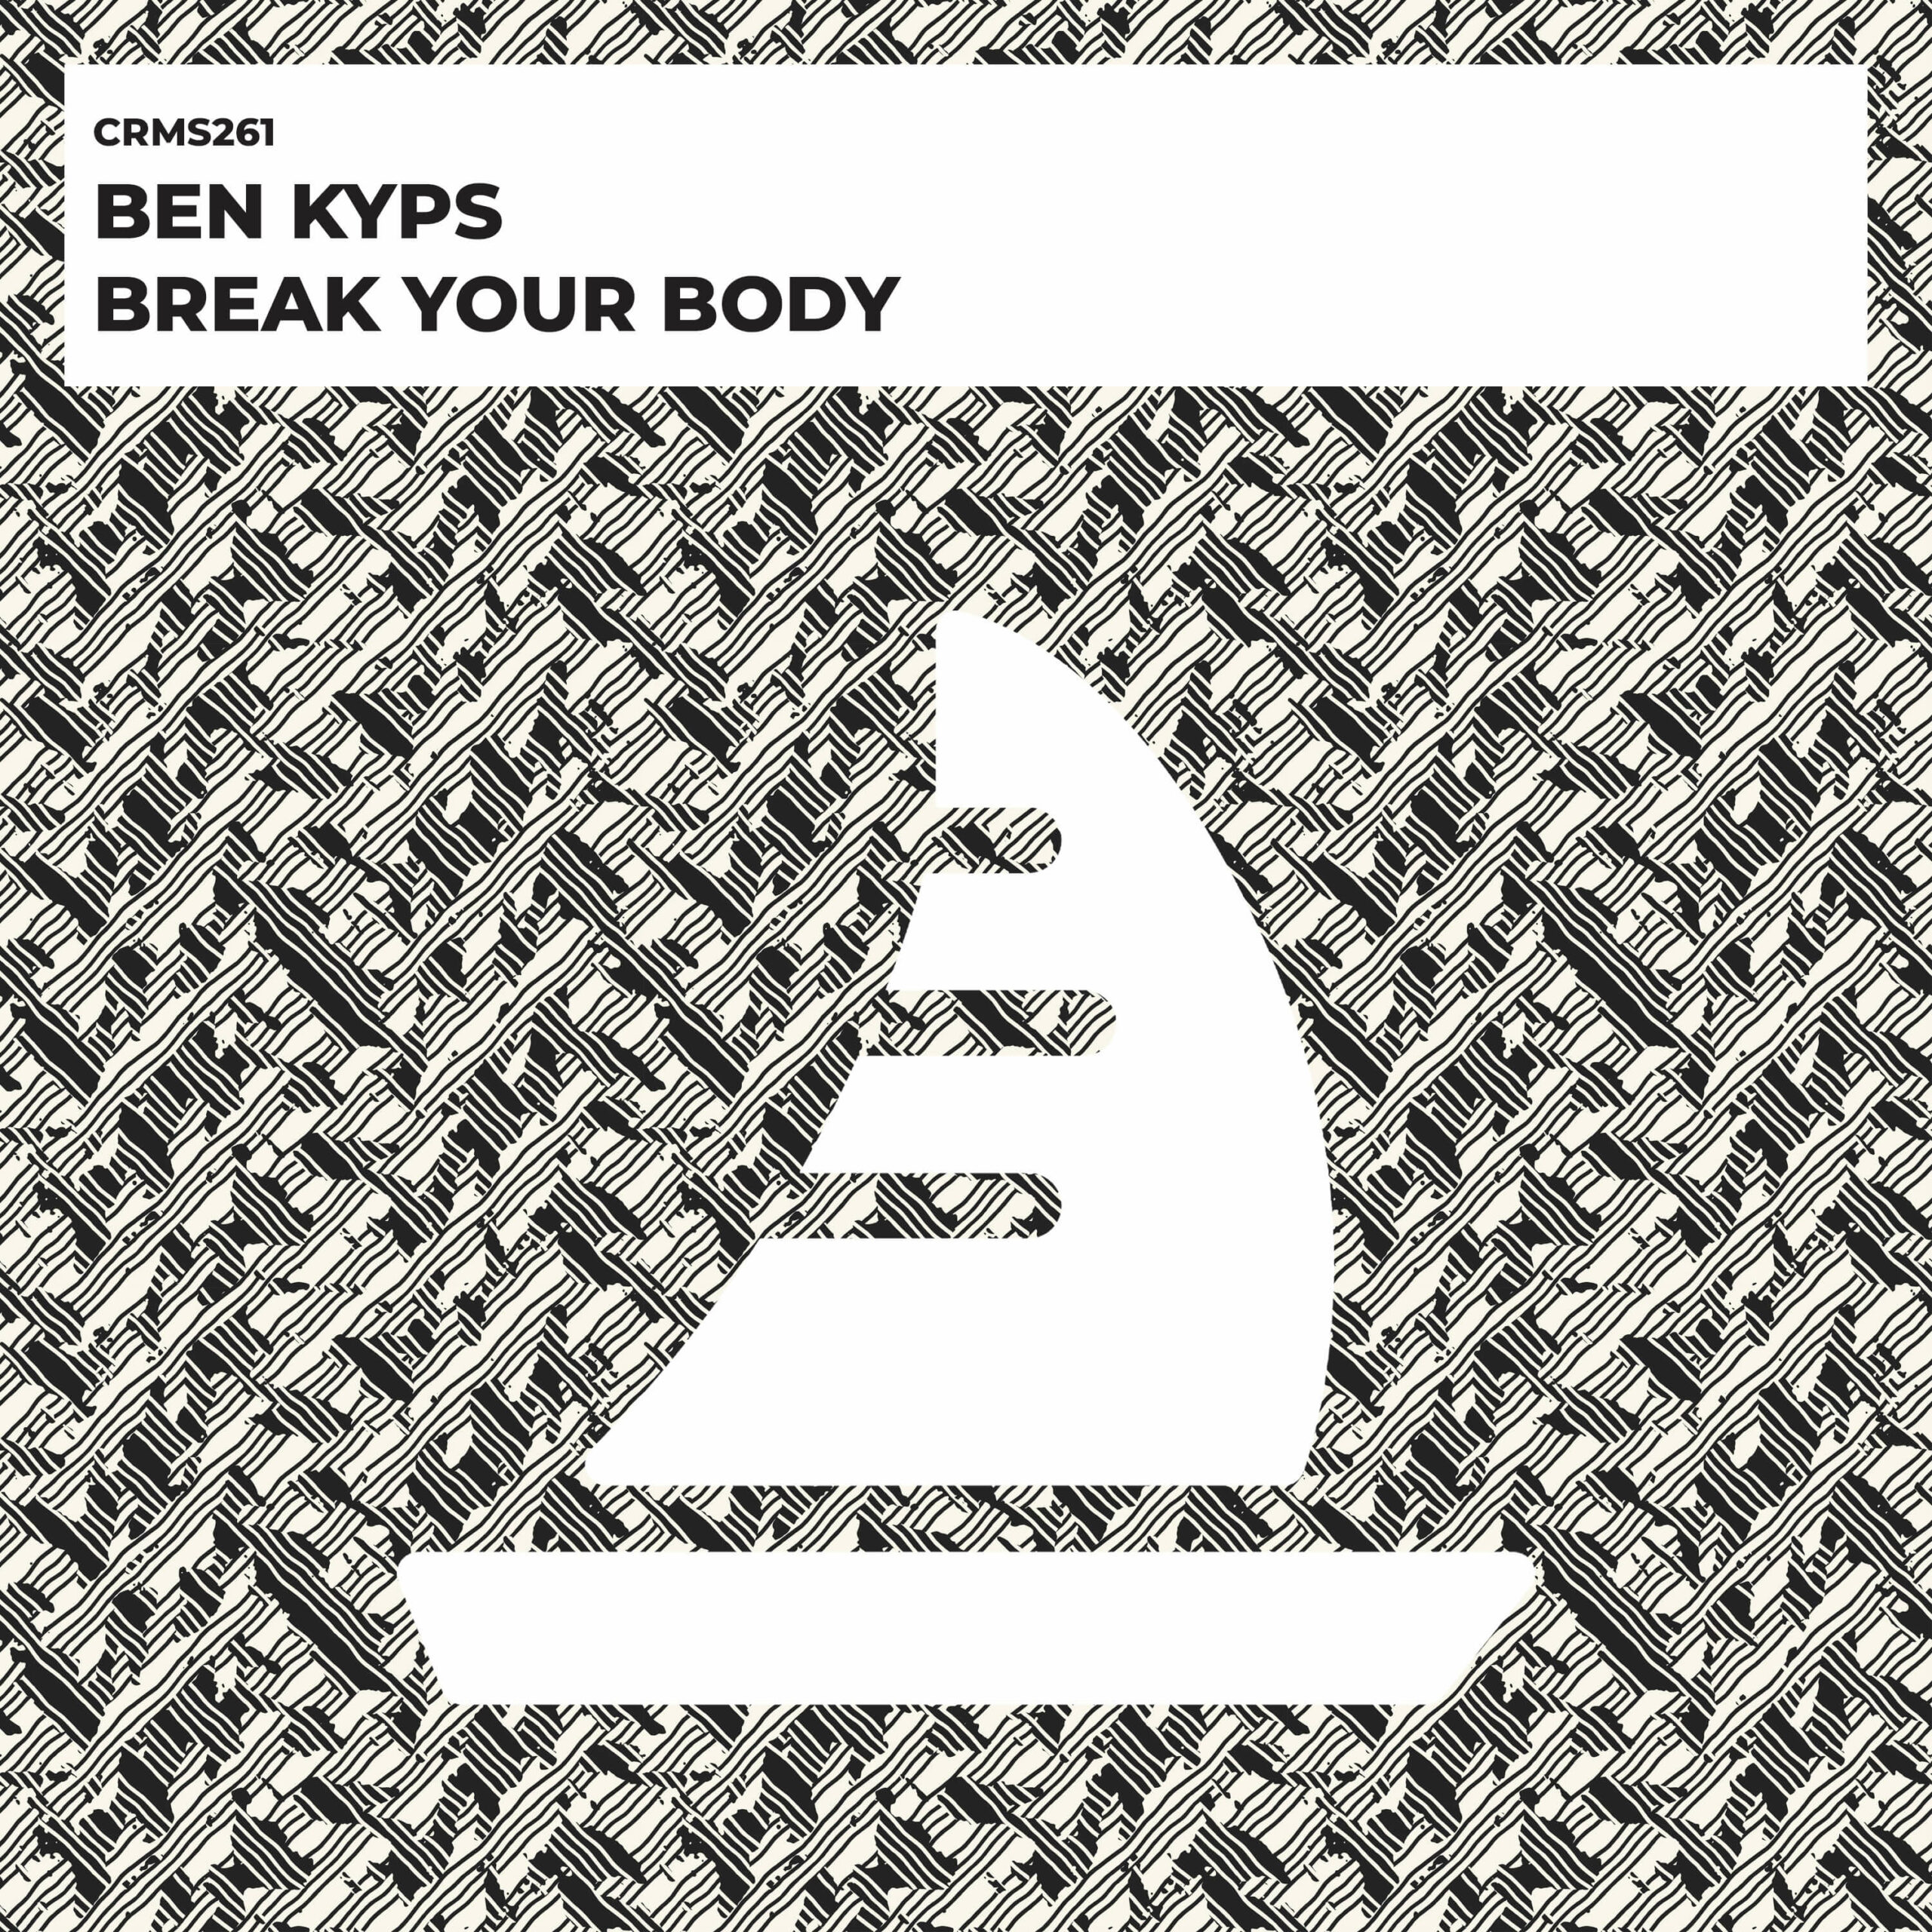 Ben Kyps - Break Your Body